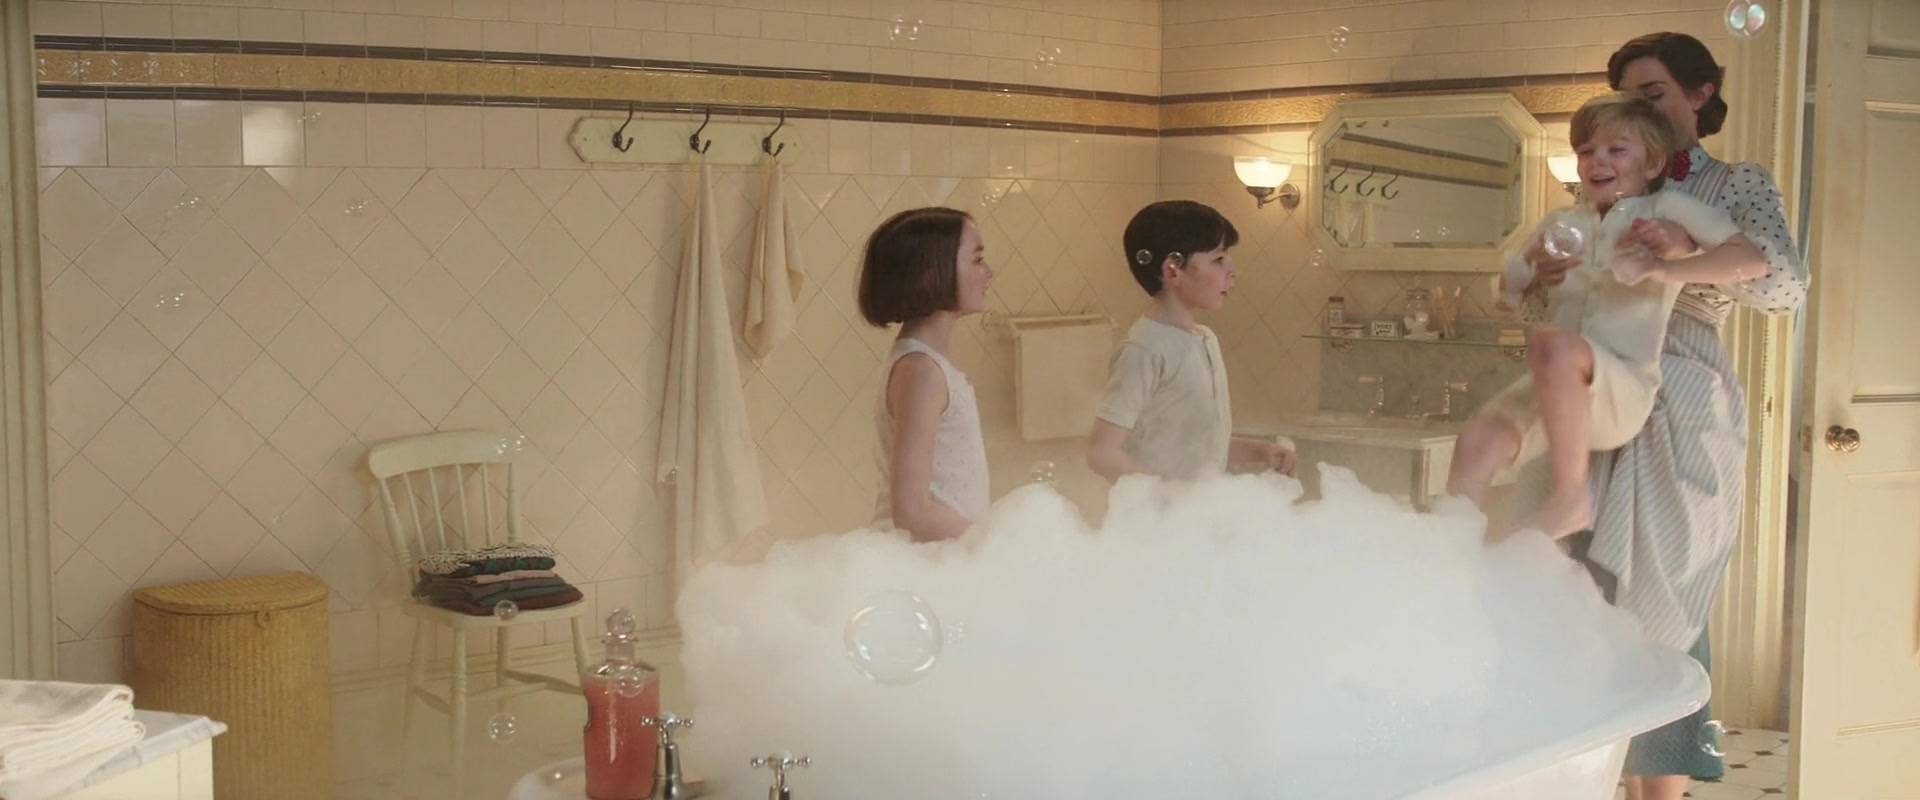 Тест: Ванная из какого фильма вам бы подошла?